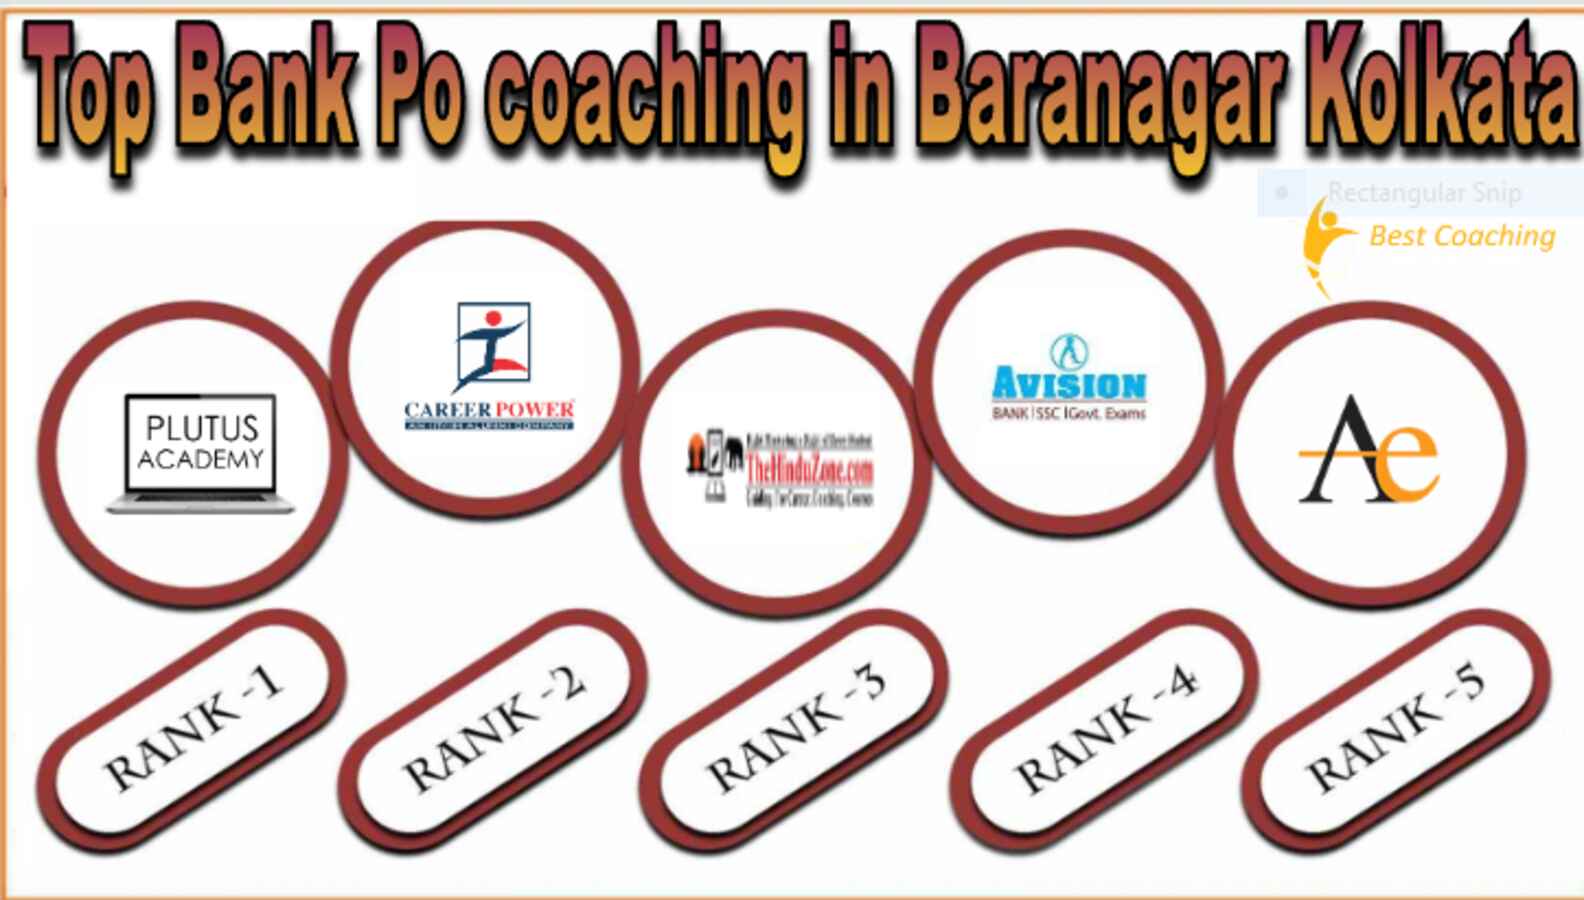 Top Bank Po coaching in Baranagar Kolkata